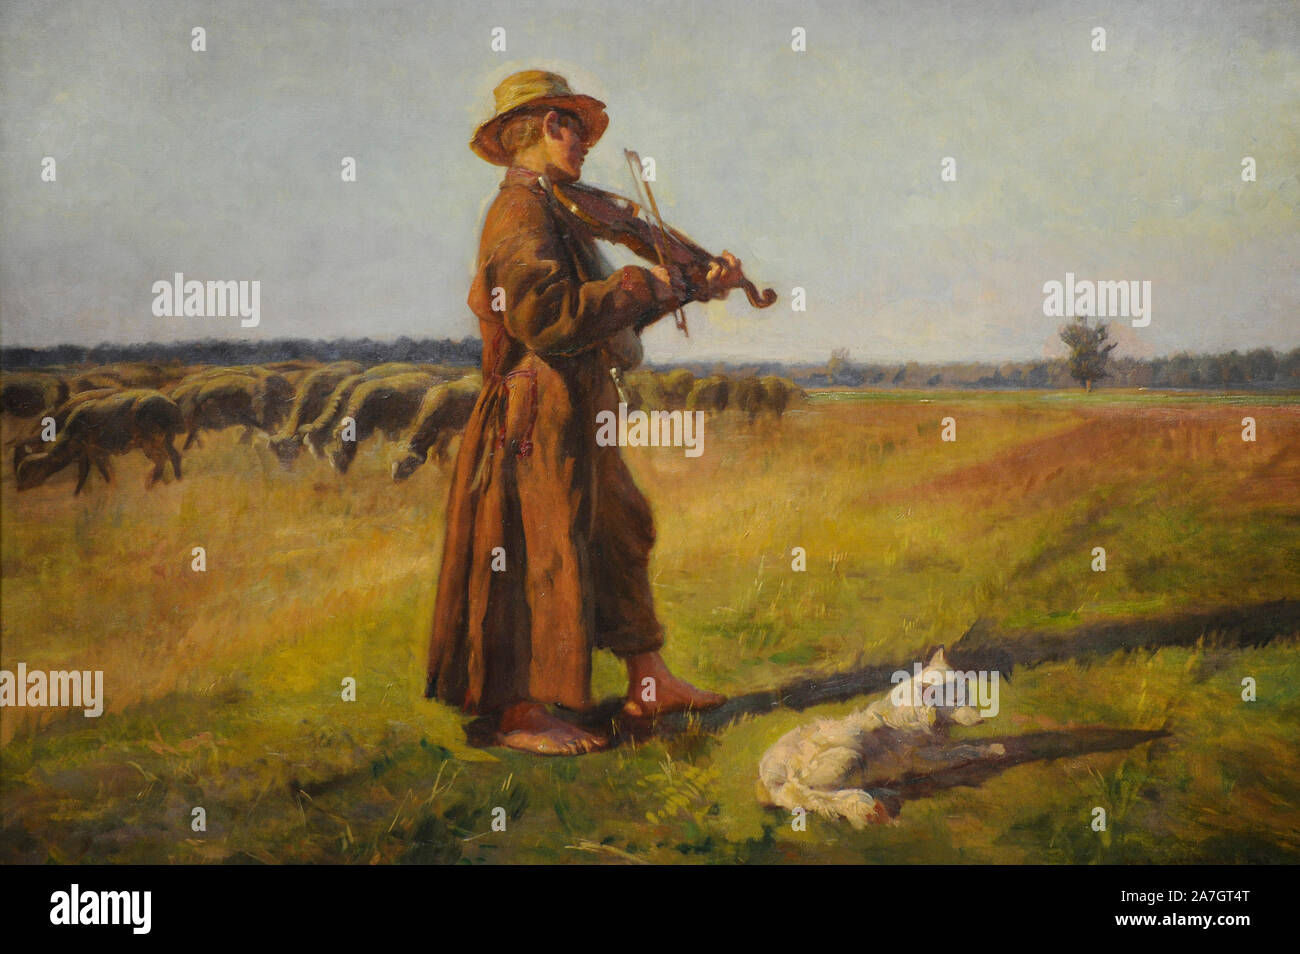 Shepherd, 1897, par Jozef Chelmonski (1849-1914). Peintre polonais. Huile sur toile. Galerie d'Art Polonais du xixe siècle (Musée Sukiennice). Musée National de Cracovie. La Pologne. Banque D'Images